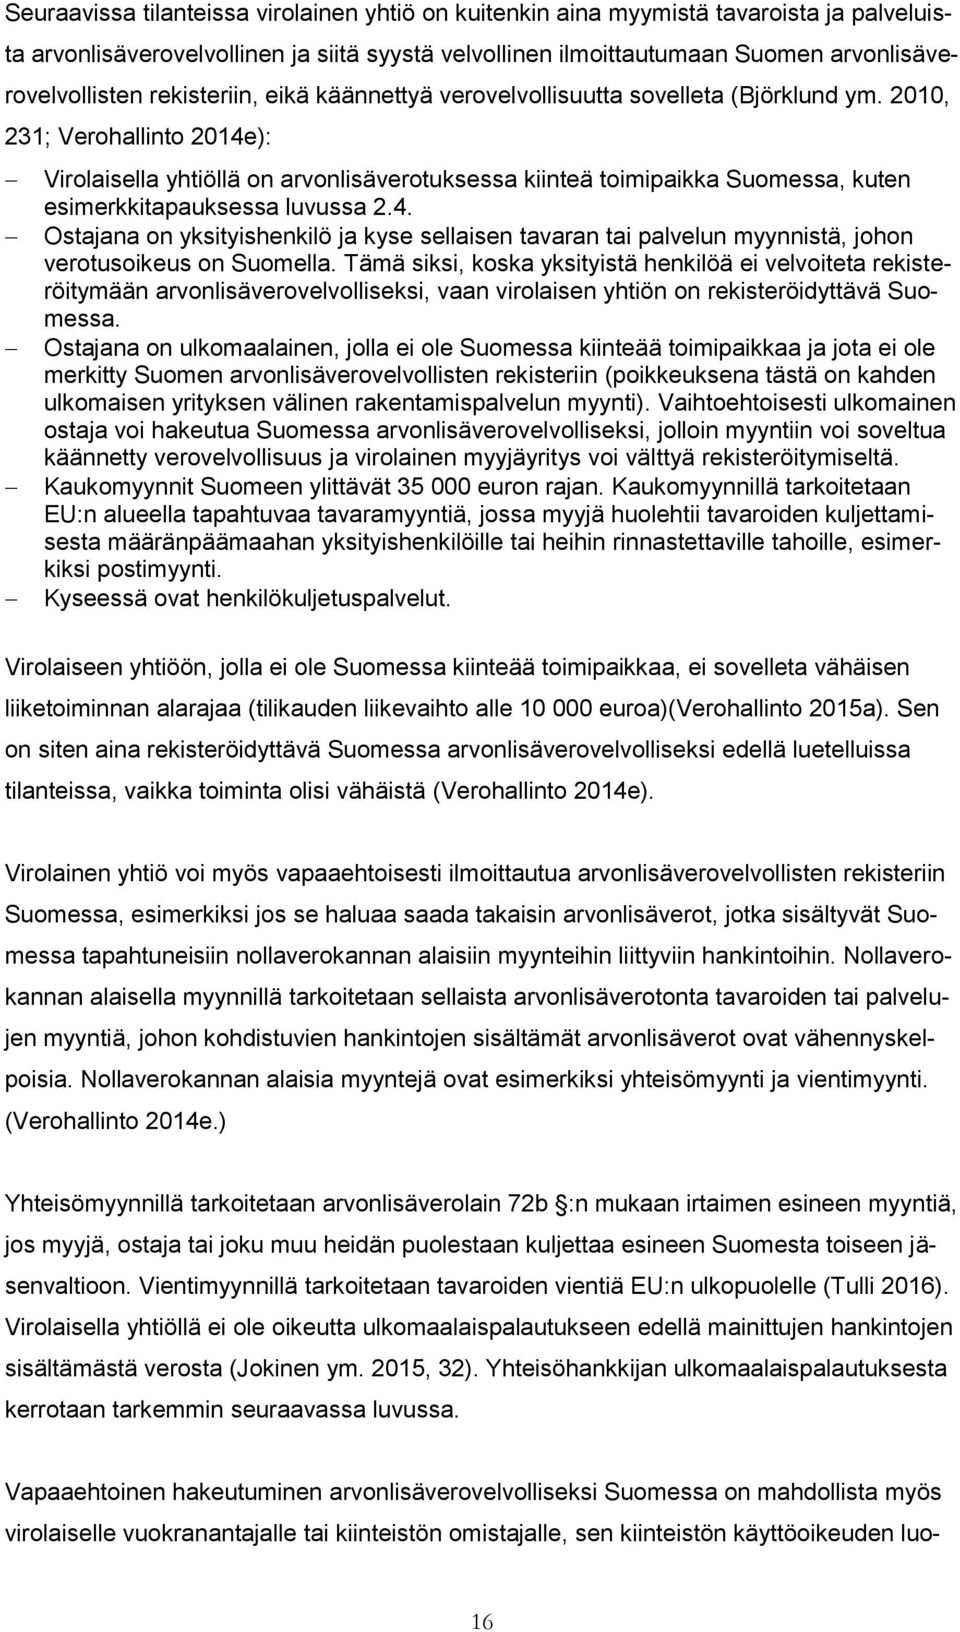 2010, 231; Verohallinto 2014e): Virolaisella yhtiöllä on arvonlisäverotuksessa kiinteä toimipaikka Suomessa, kuten esimerkkitapauksessa luvussa 2.4. Ostajana on yksityishenkilö ja kyse sellaisen tavaran tai palvelun myynnistä, johon verotusoikeus on Suomella.